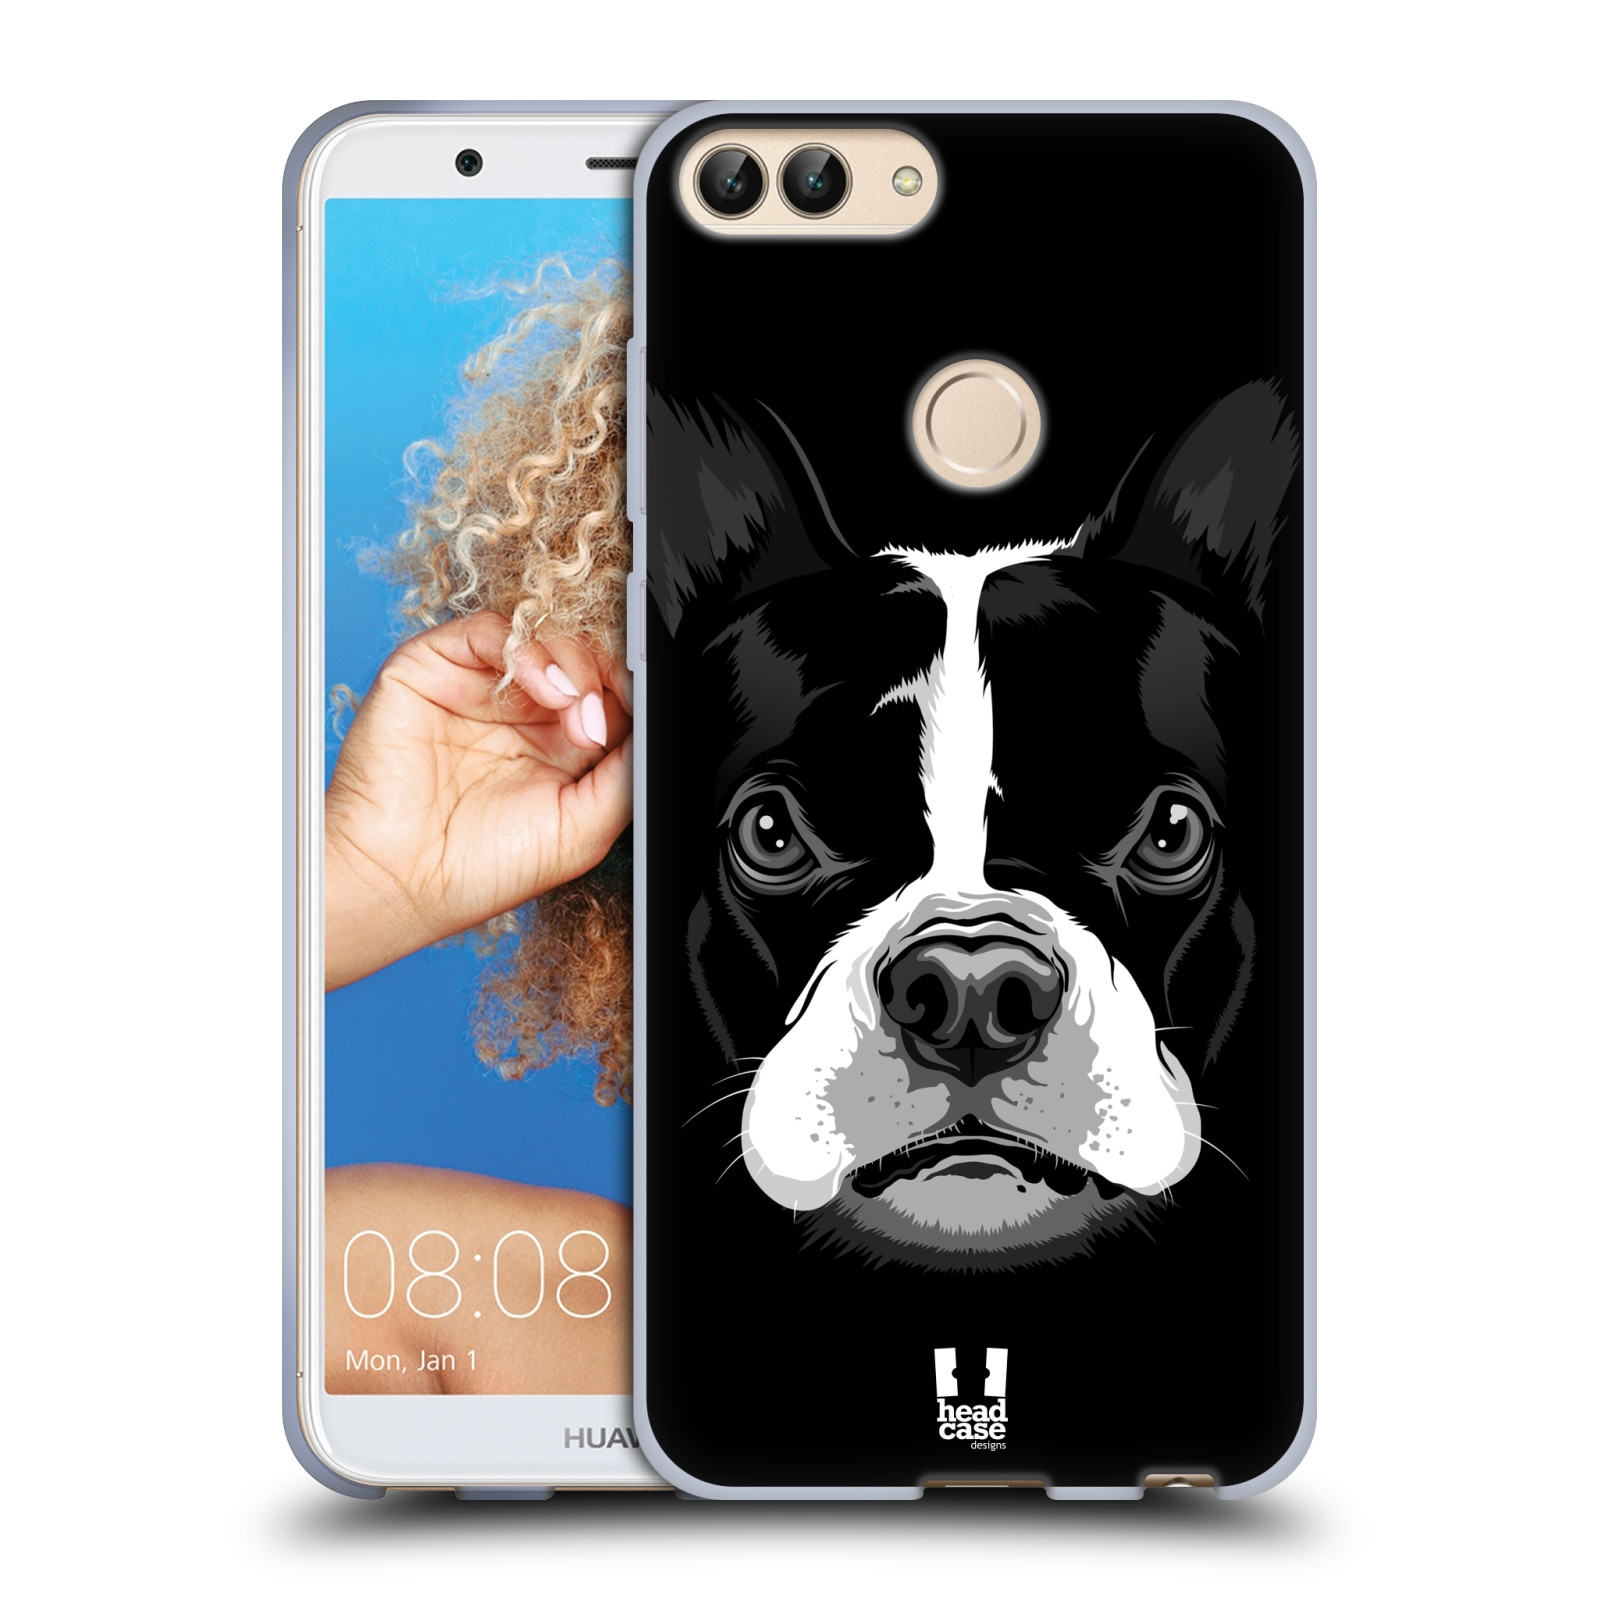 HEAD CASE silikon obal na mobil Huawei P SMART vzor Zvíře kreslená tvář 2 buldok